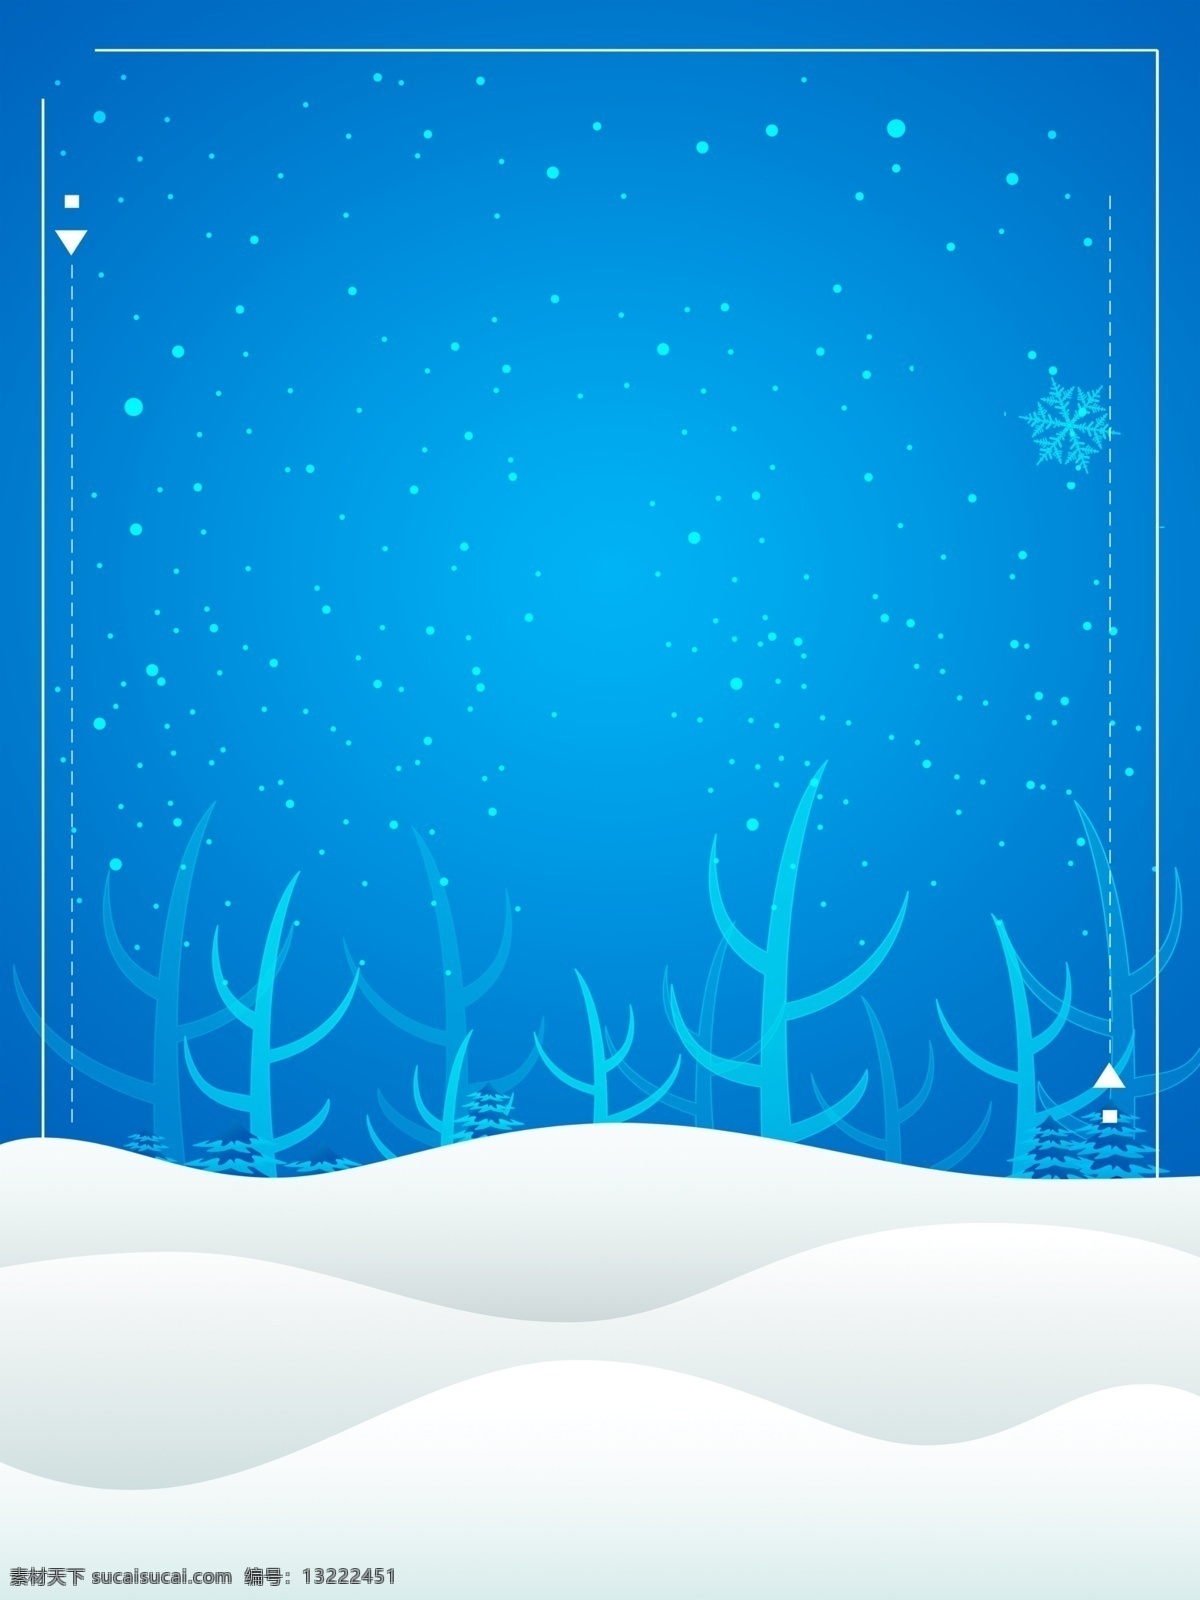 创意 时尚 立体 冬季 旅游 背景 蓝色背景 雪景 冬季旅游 原创 宣传海报